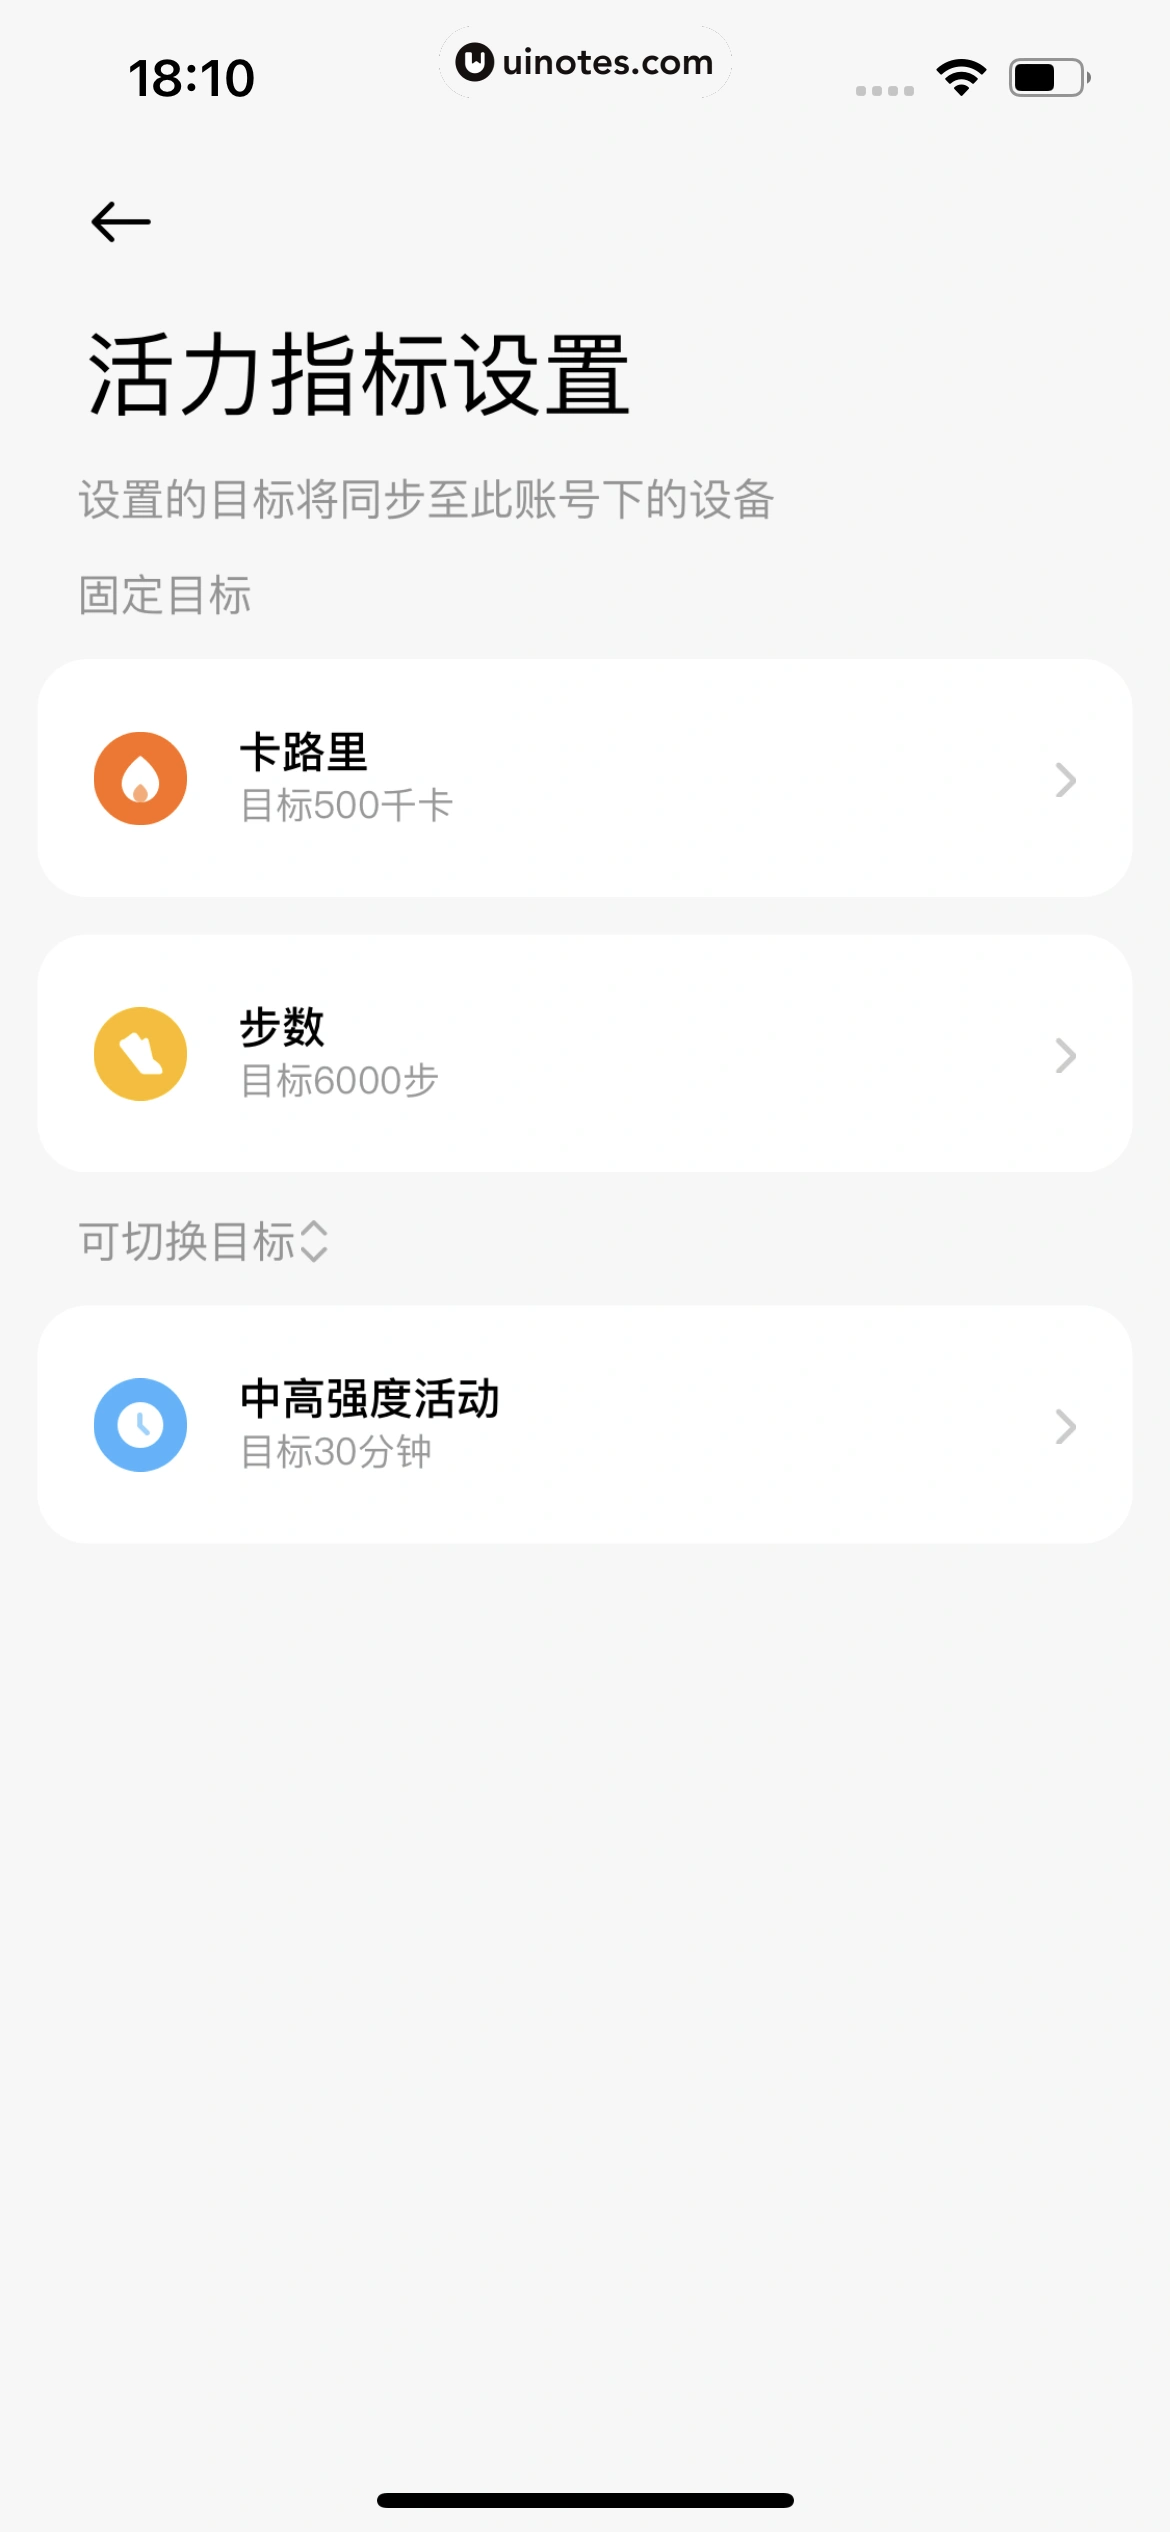 小米运动健康 App 截图 054 - UI Notes